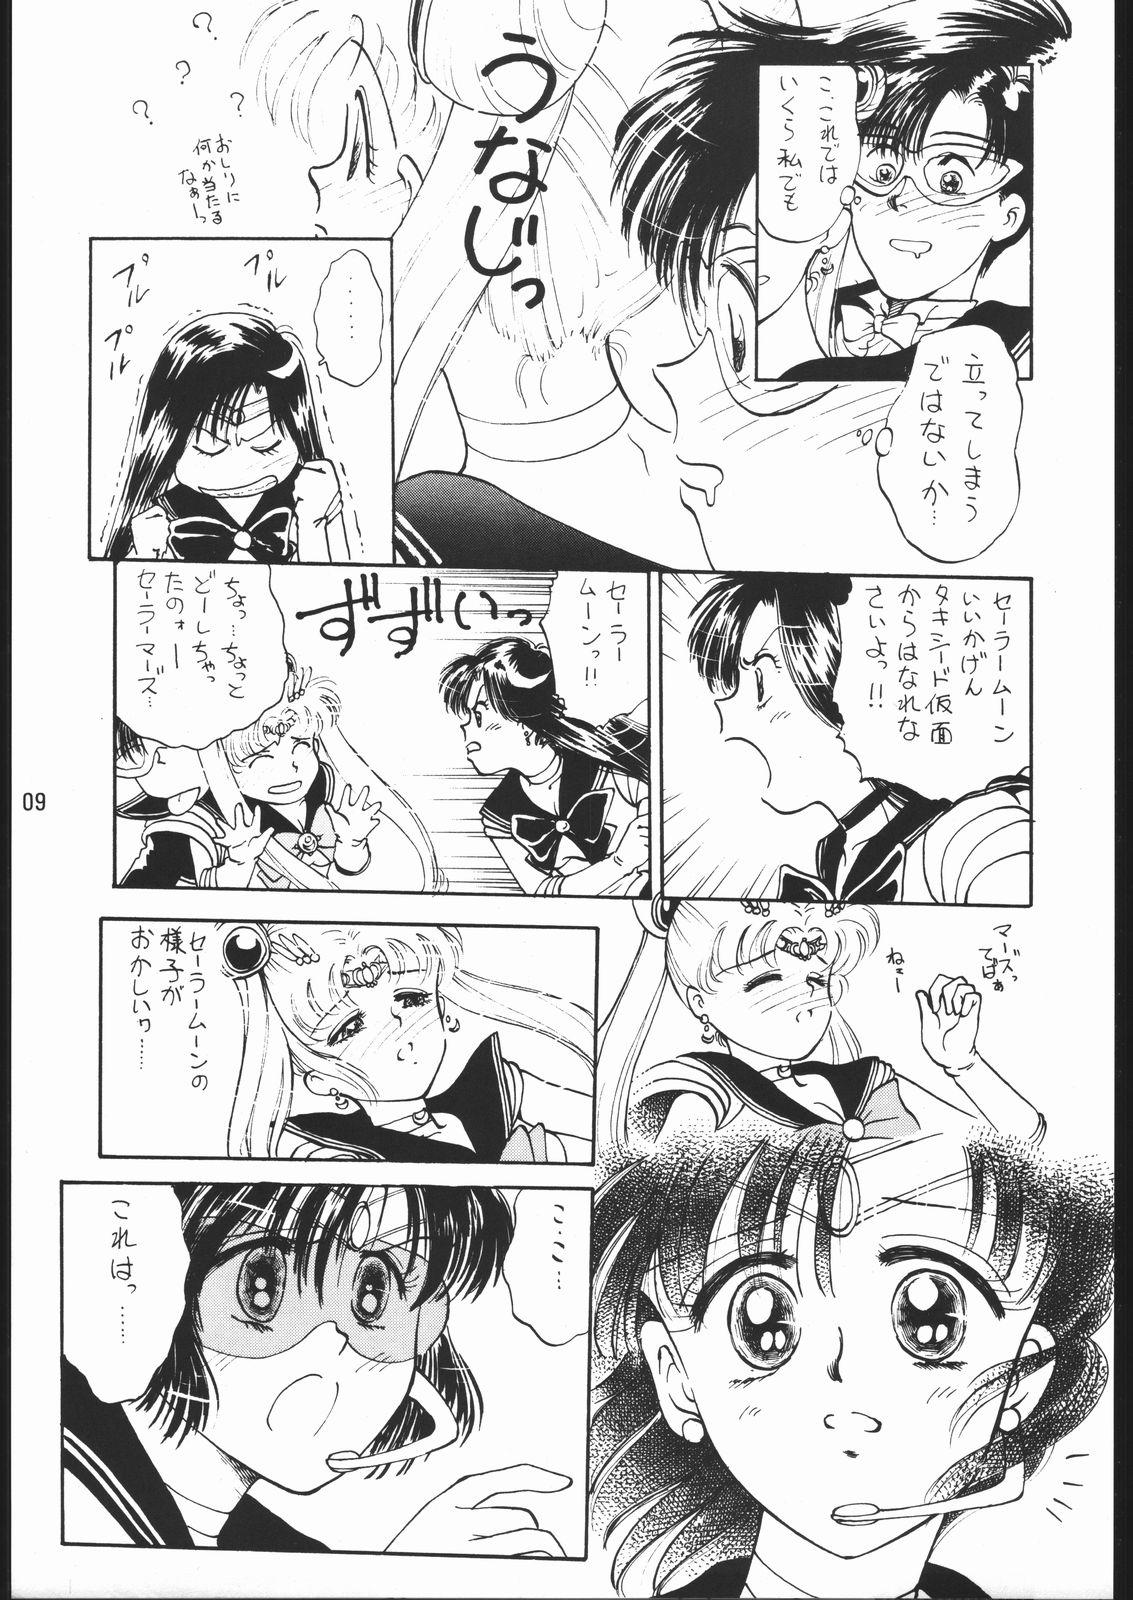 Fresh うさぎがピョン!! - Sailor moon Italiano - Page 8